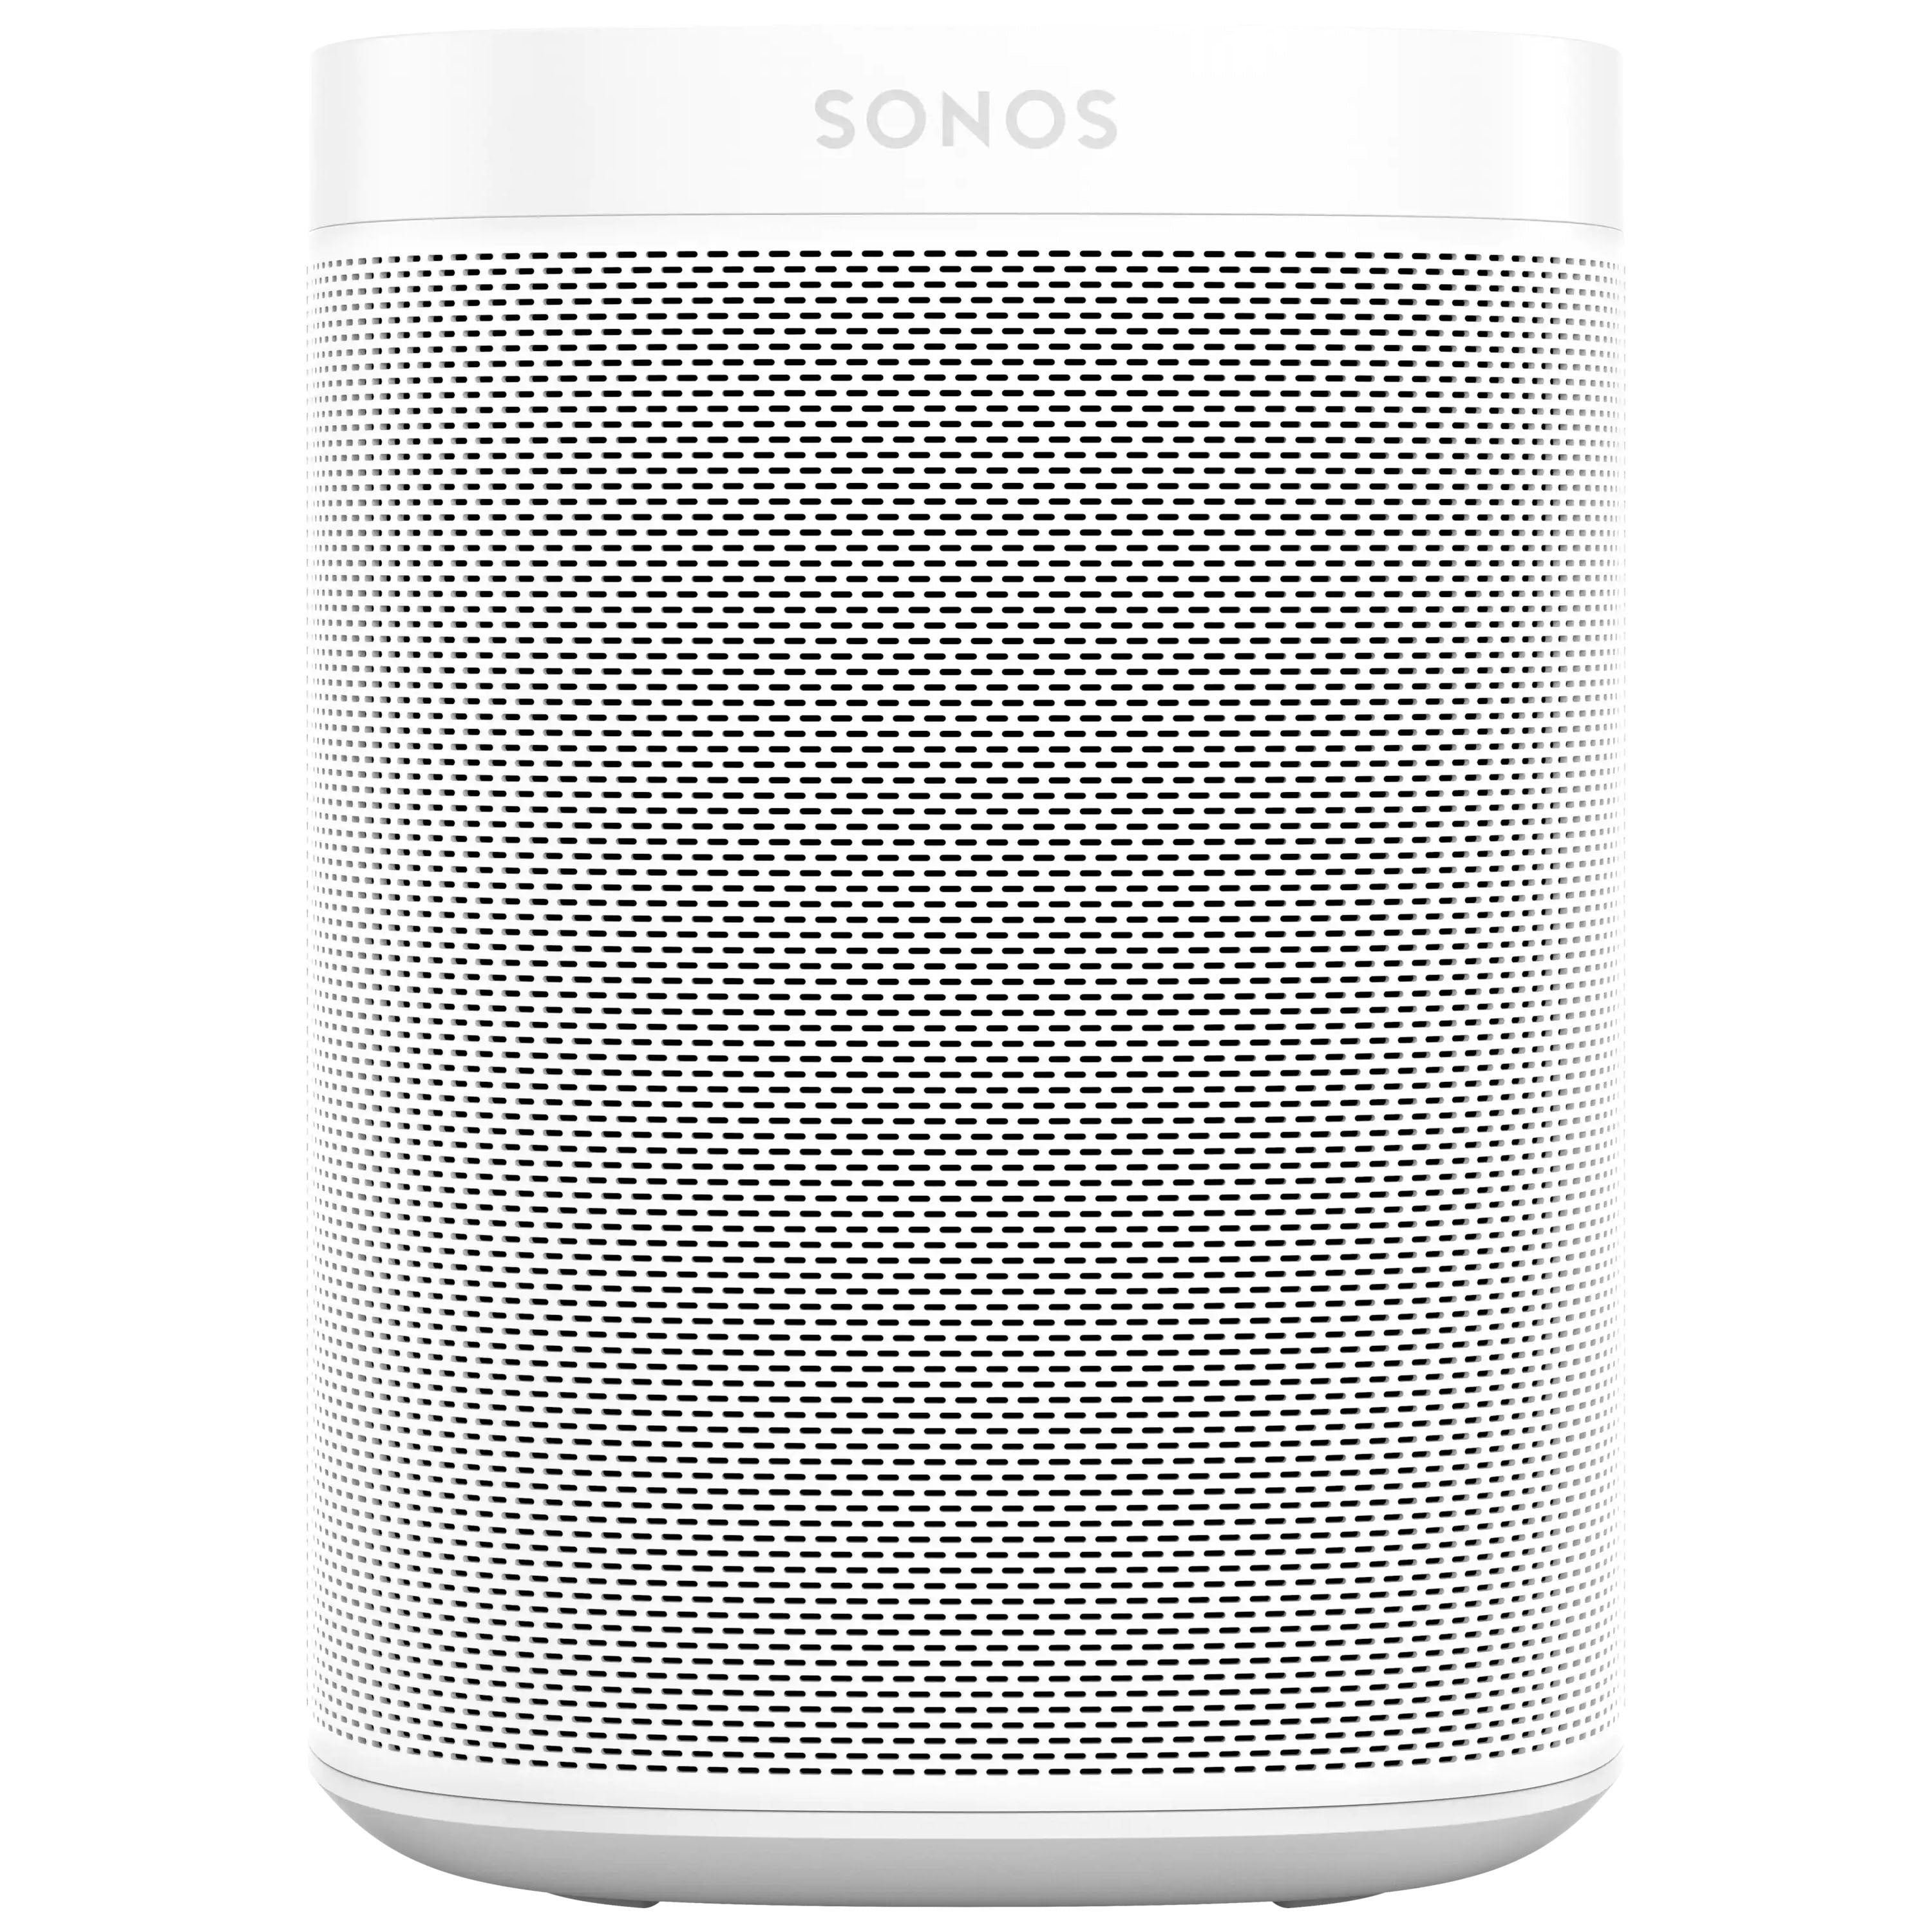 Sonos One Gen 2 - The Smart Speaker for Music Lovers